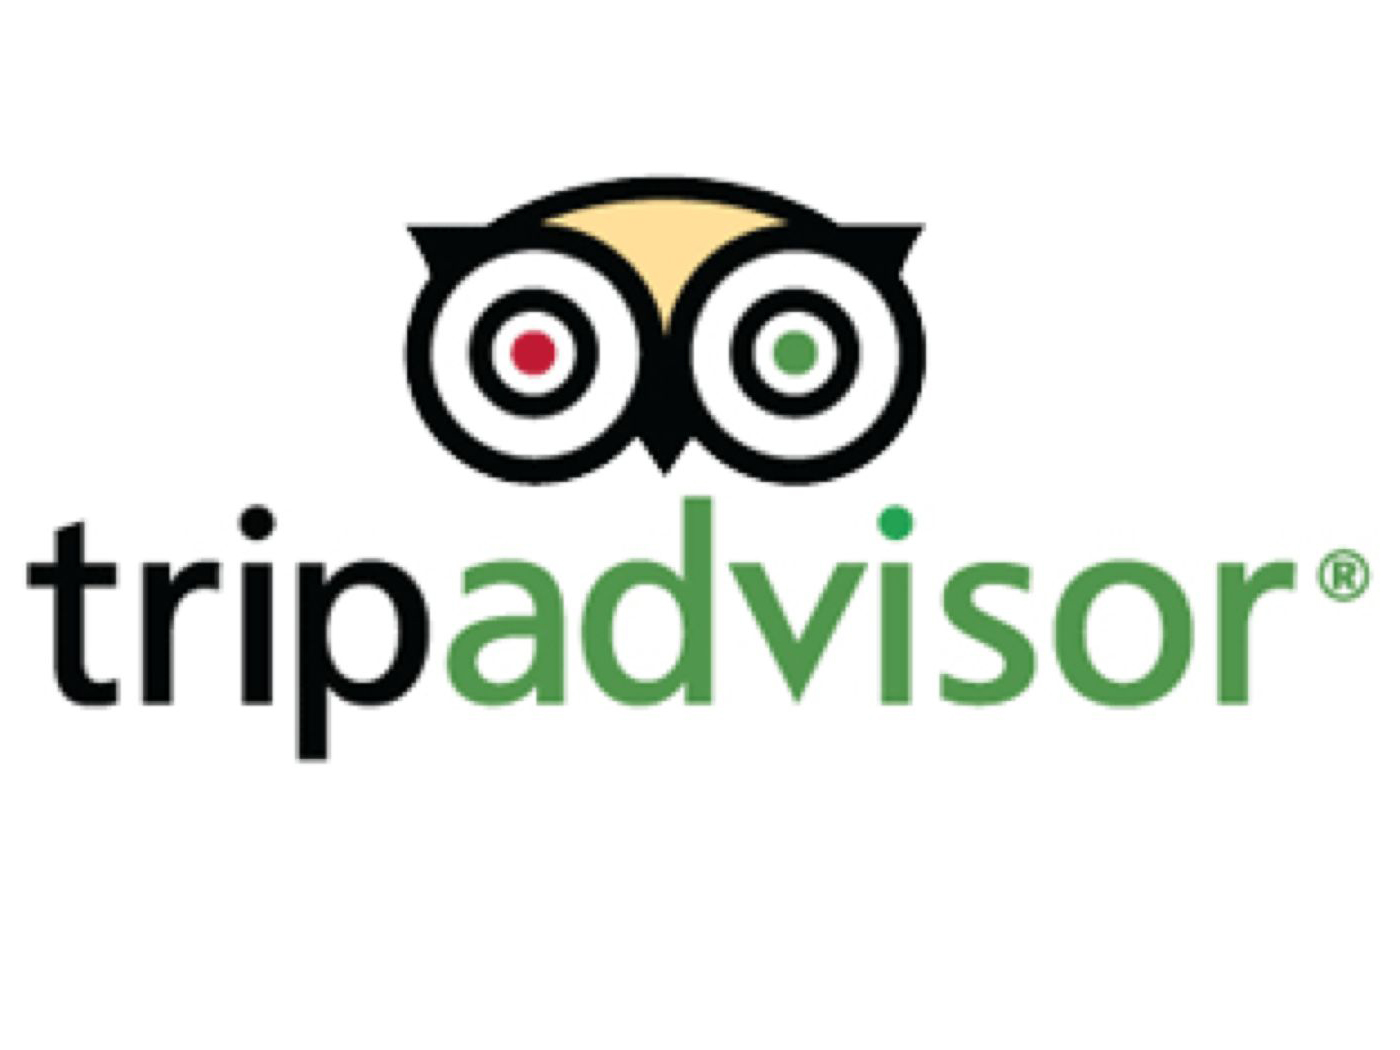 best international travel apps for travelers from UAE - tripadvisor